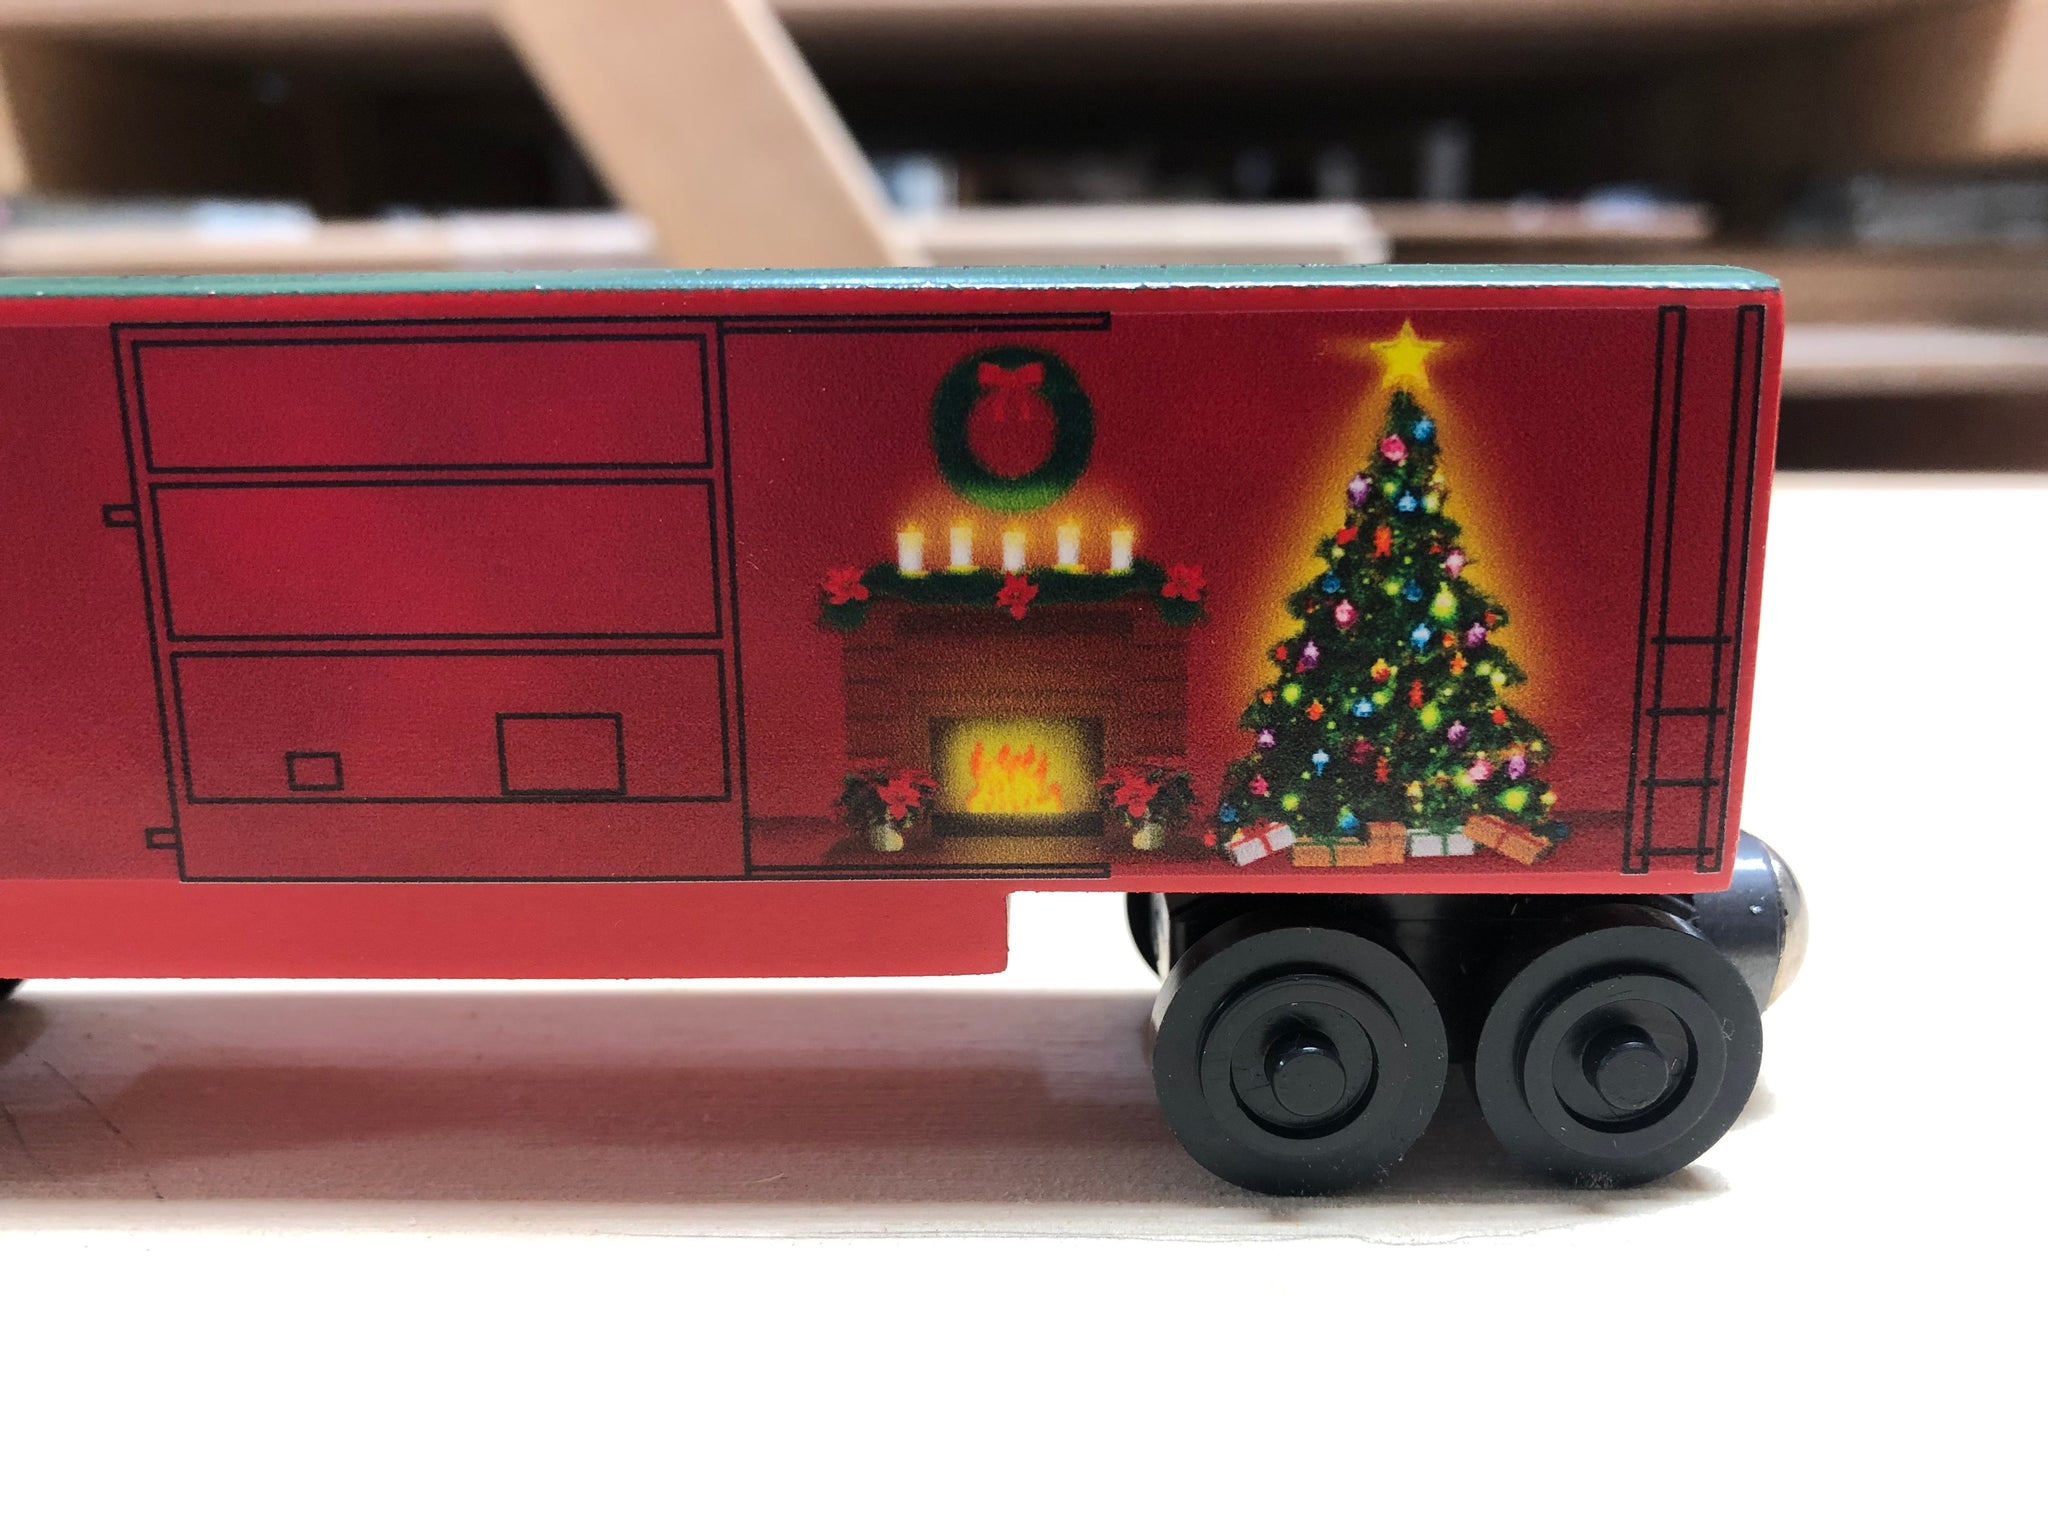 Christmas 2023 Hi-Cube Boxcar - Spanish/Espanol